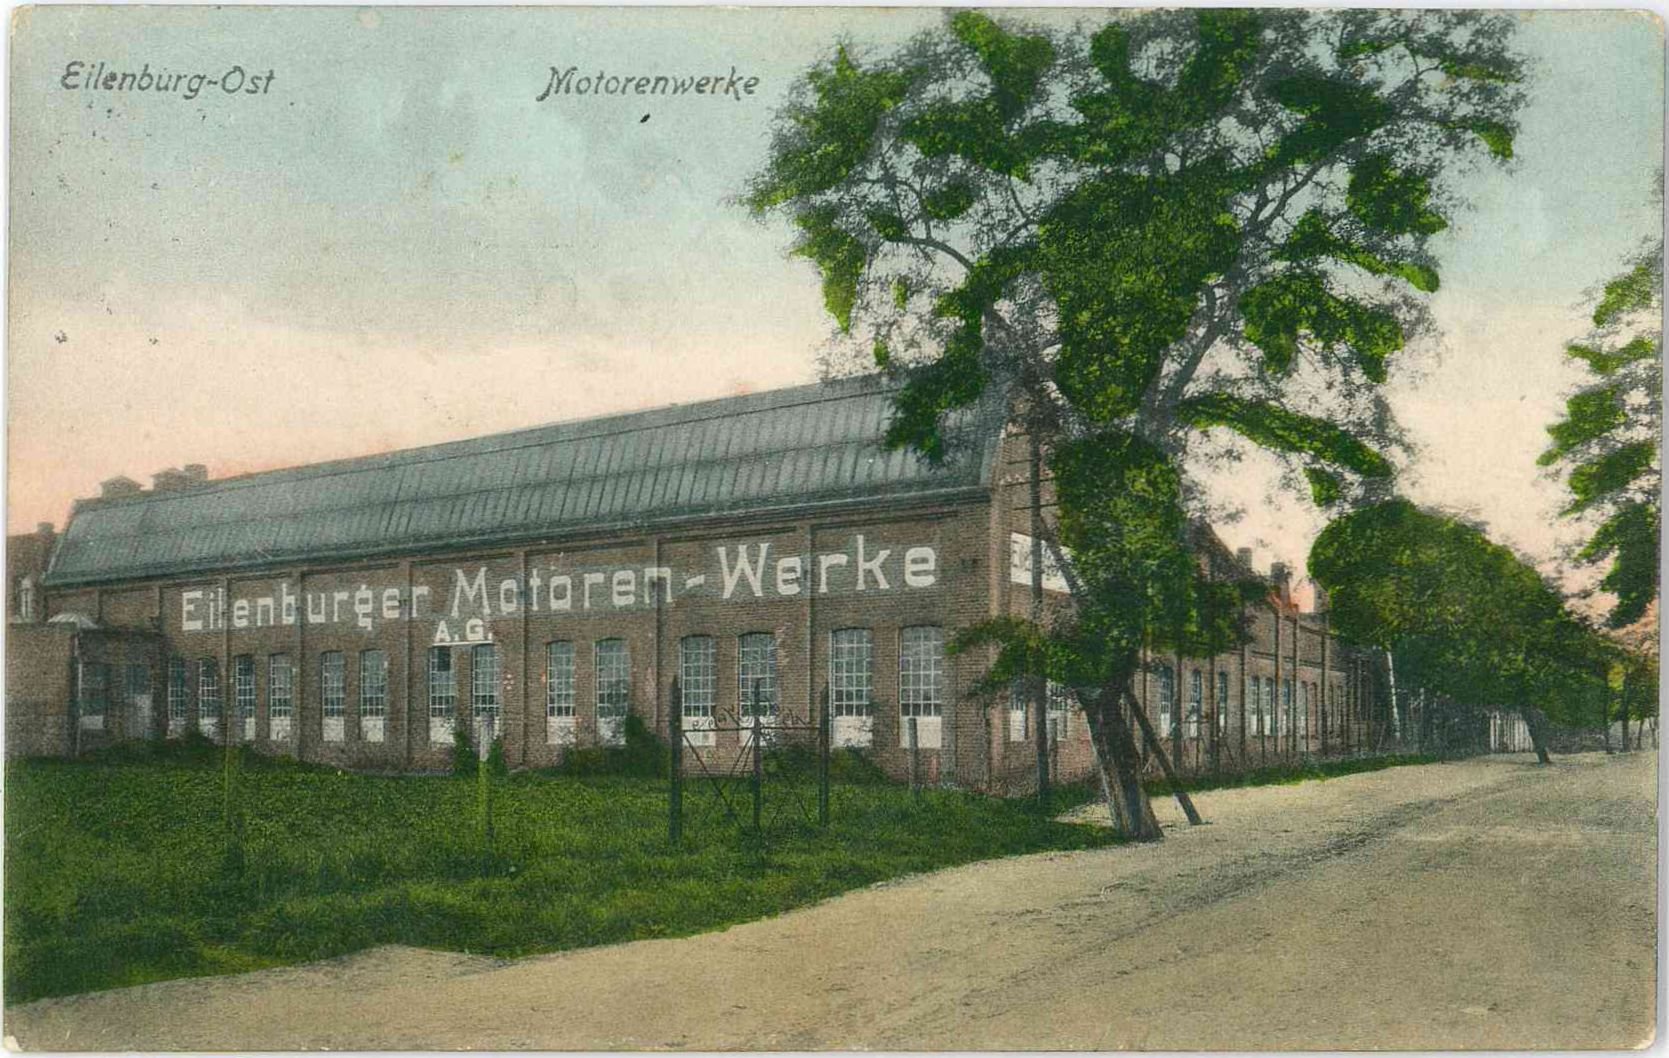 Eilenburg-Ost. Motorenwerke (Stadtmuseum Eilenburg RR-P)